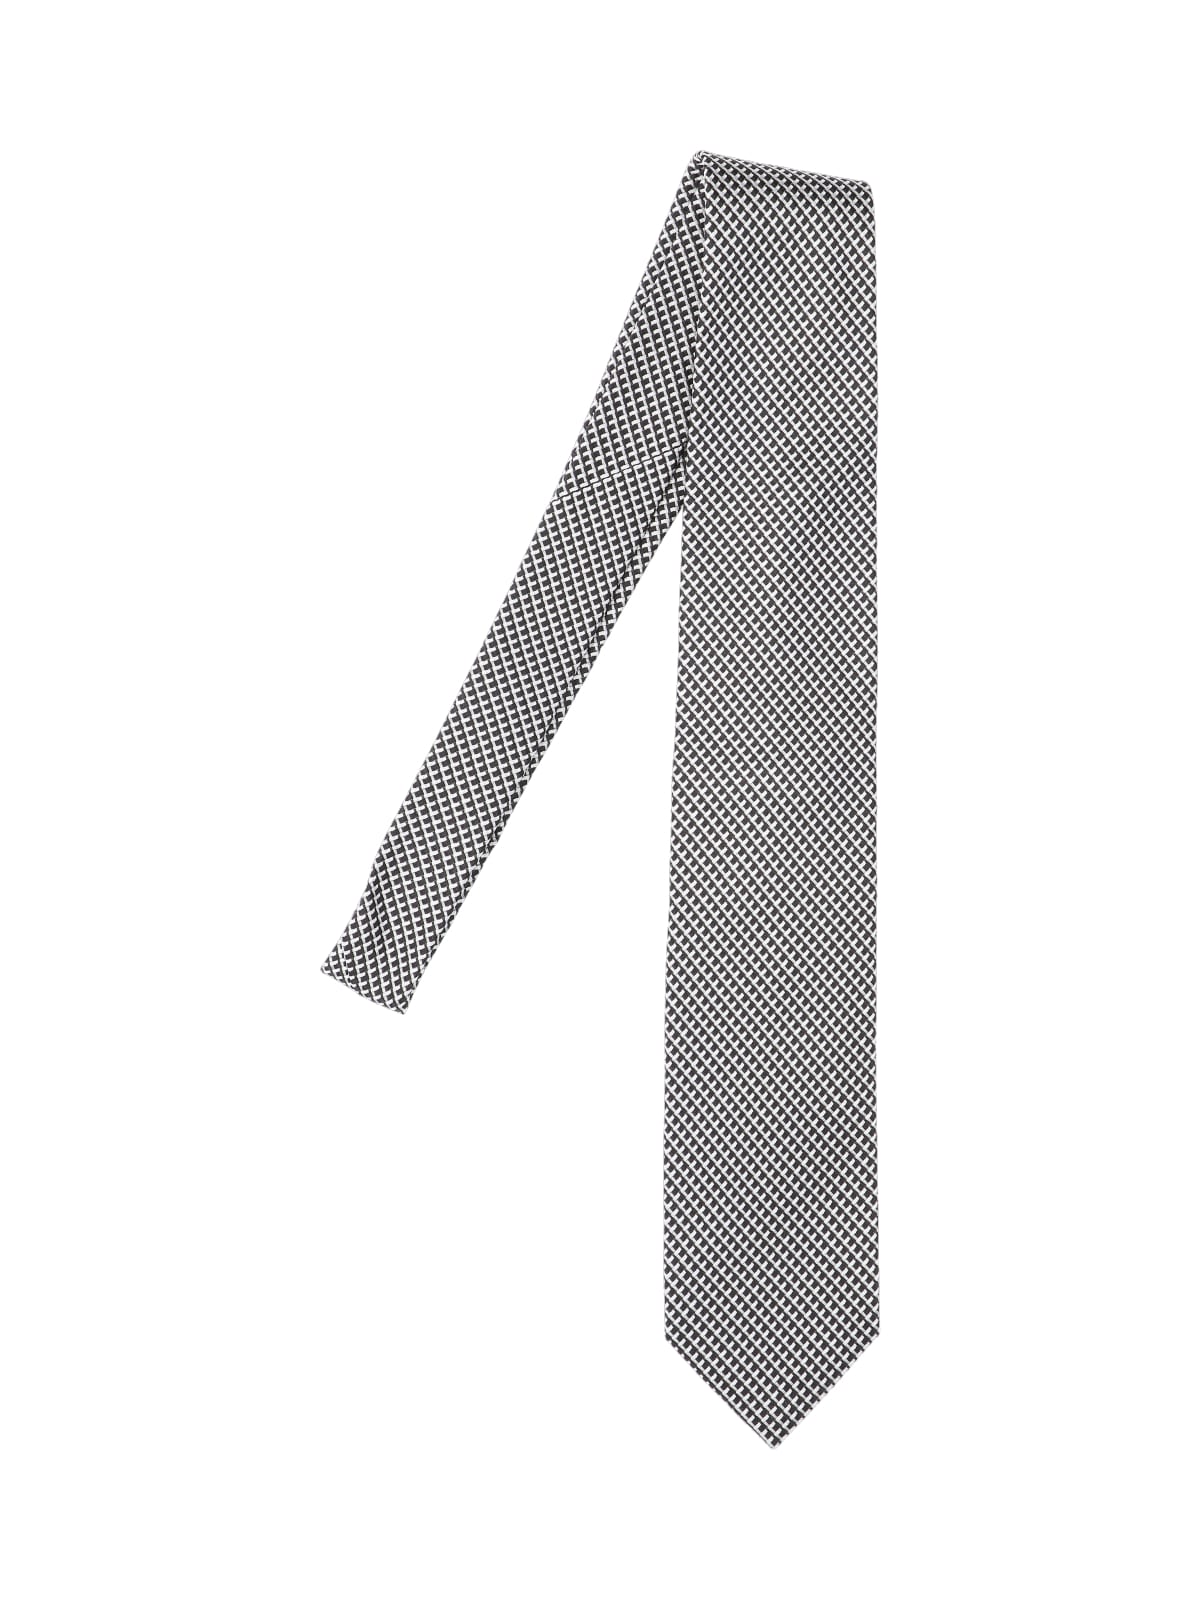 Jacquard Tie